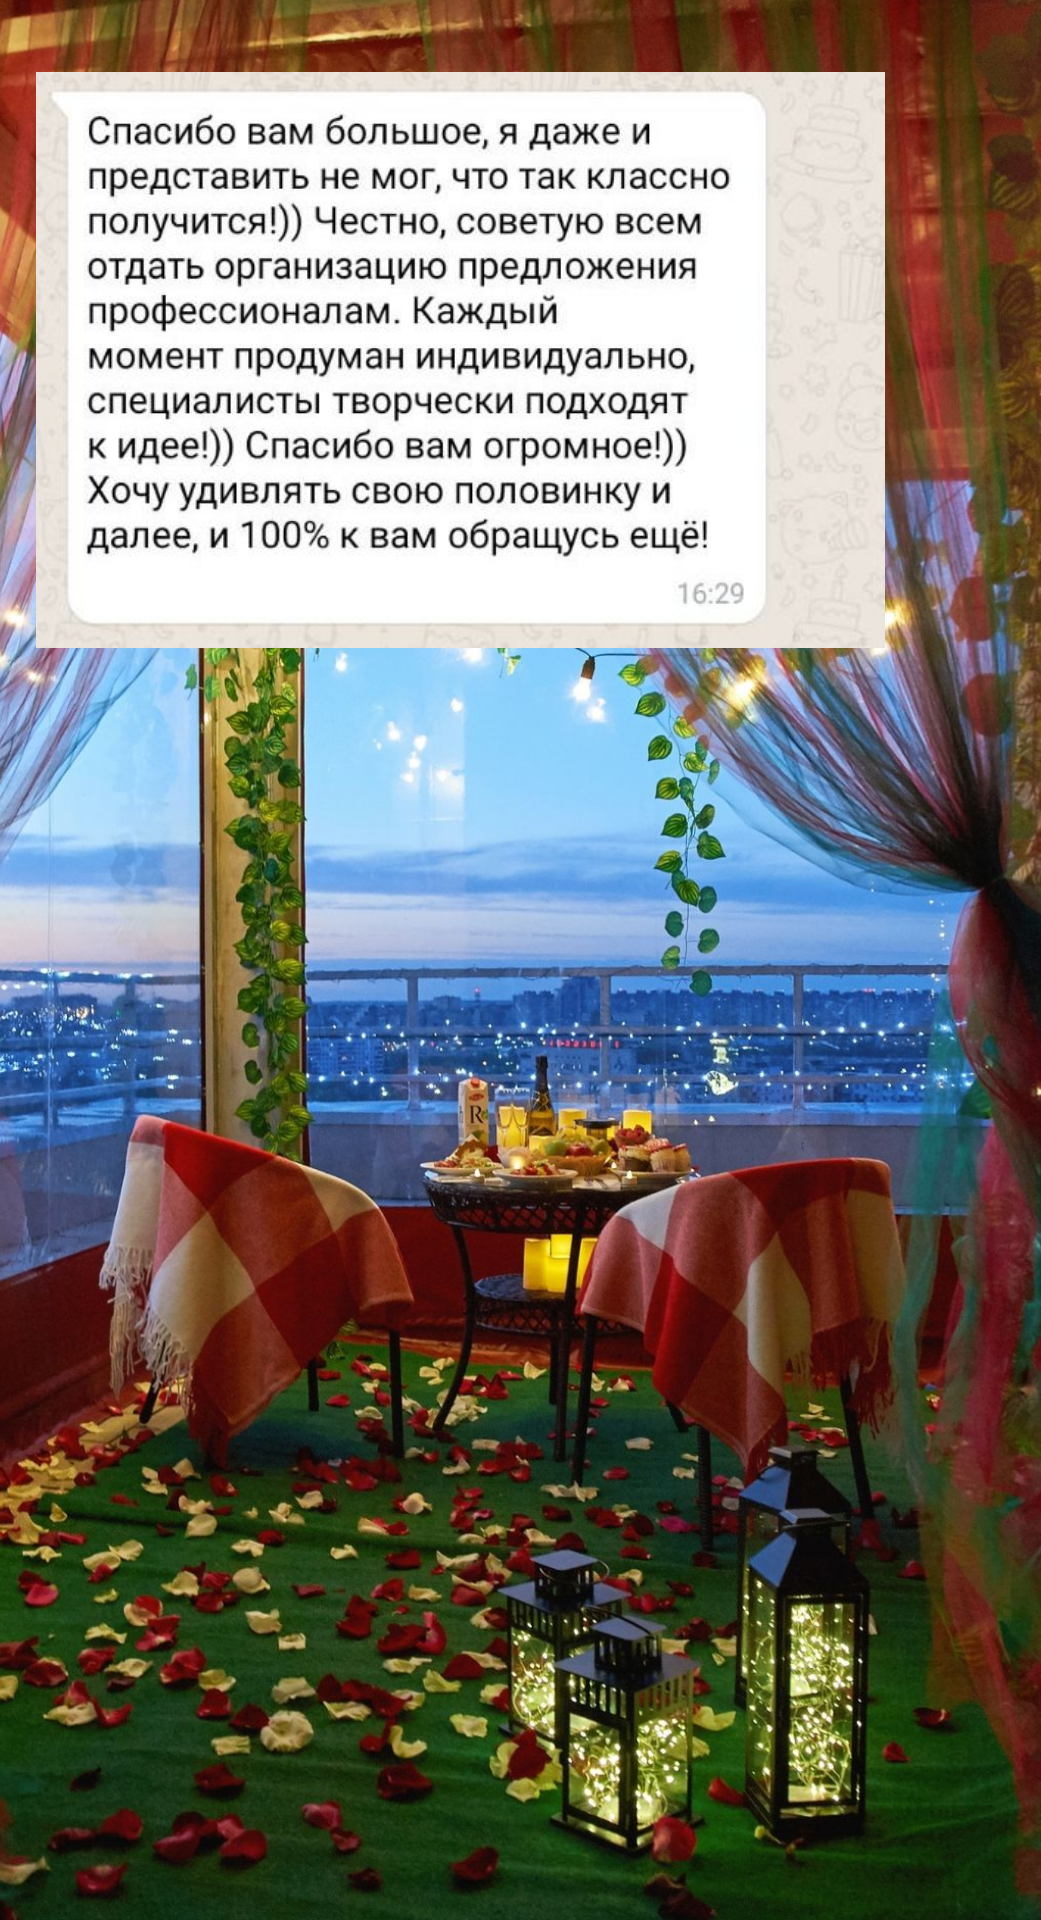 Организация предложения руки и сердца в Севастополе
от компании Pandaevent